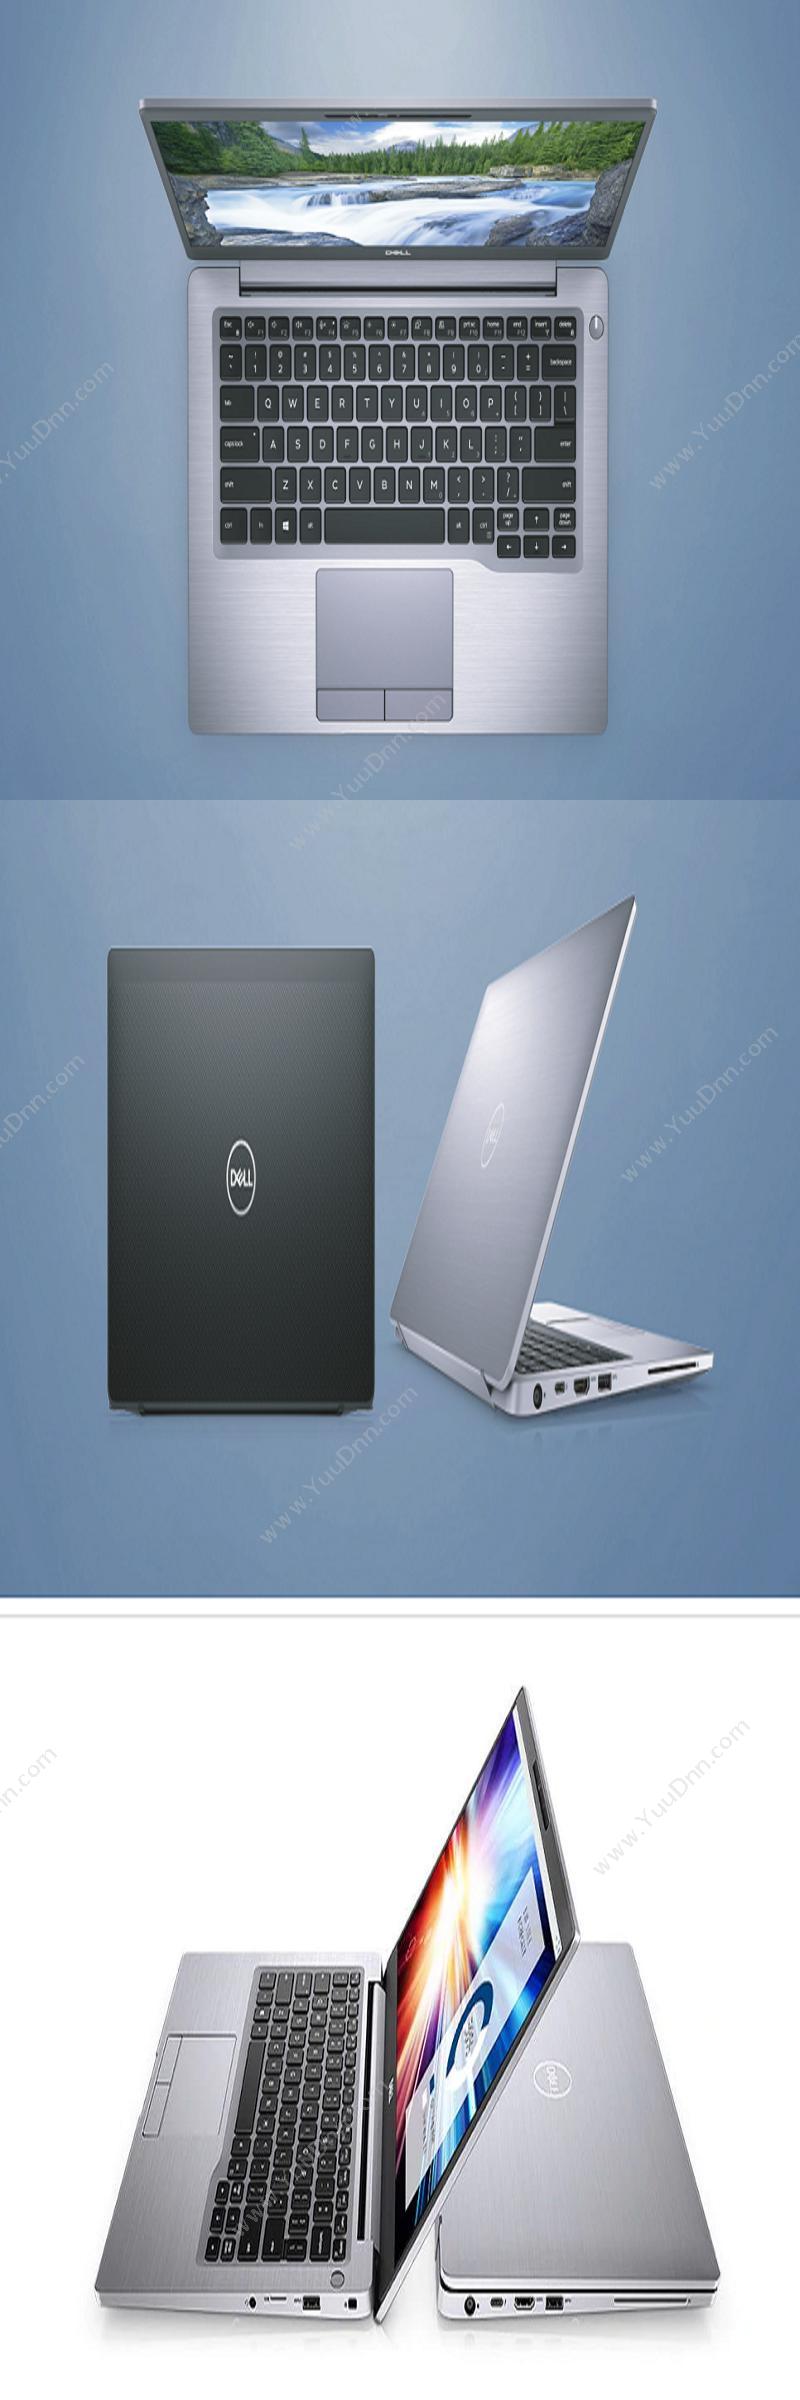 戴尔 Dell Latitude 7300 260043 （i7-8665U处理器/16GB内存/512G SSD硬盘/13.3寸/集成显卡/指纹识别） 笔记本